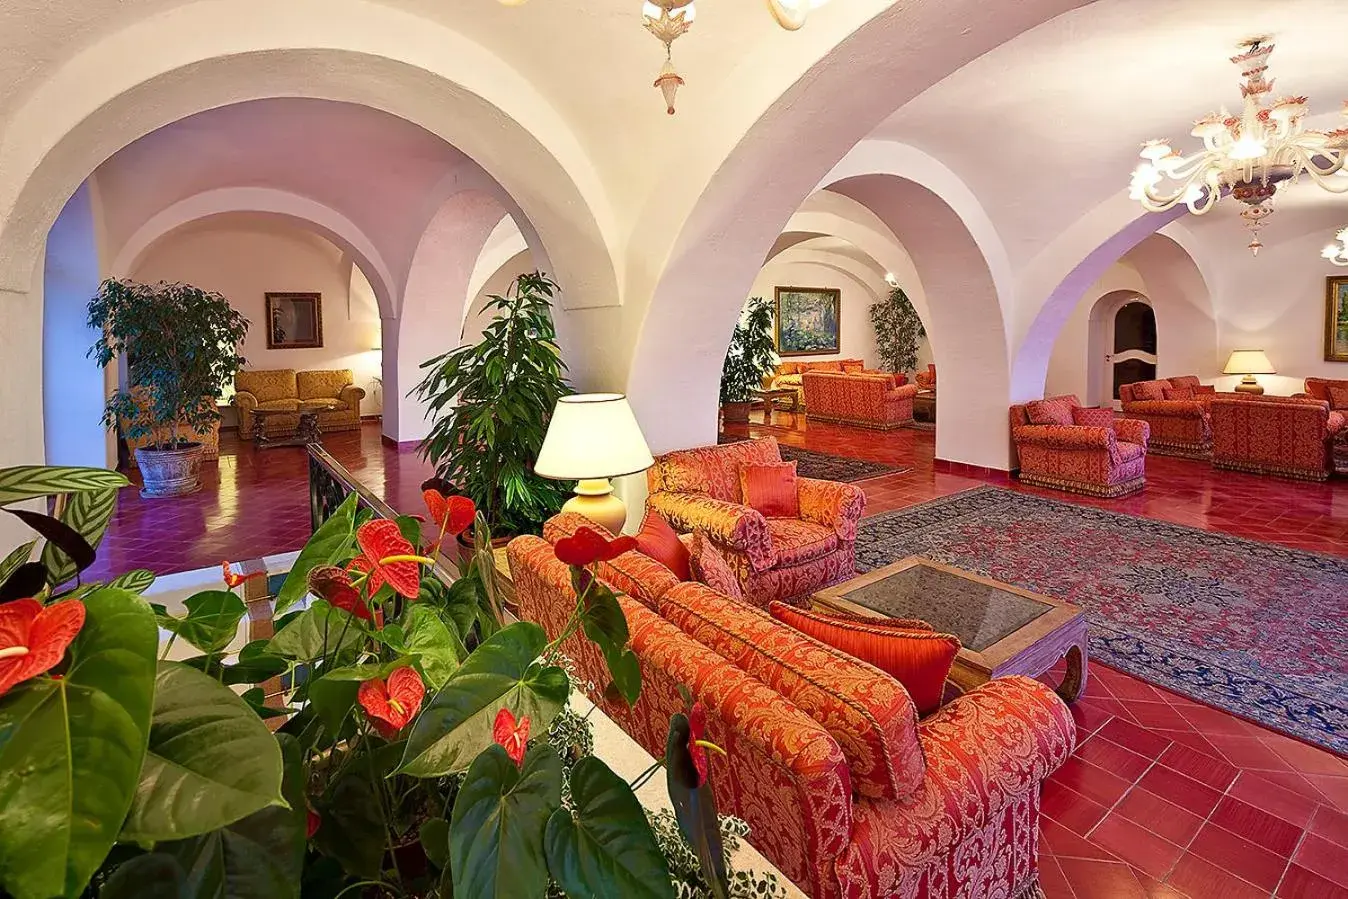 Lobby or reception in Grand Hotel Il Moresco